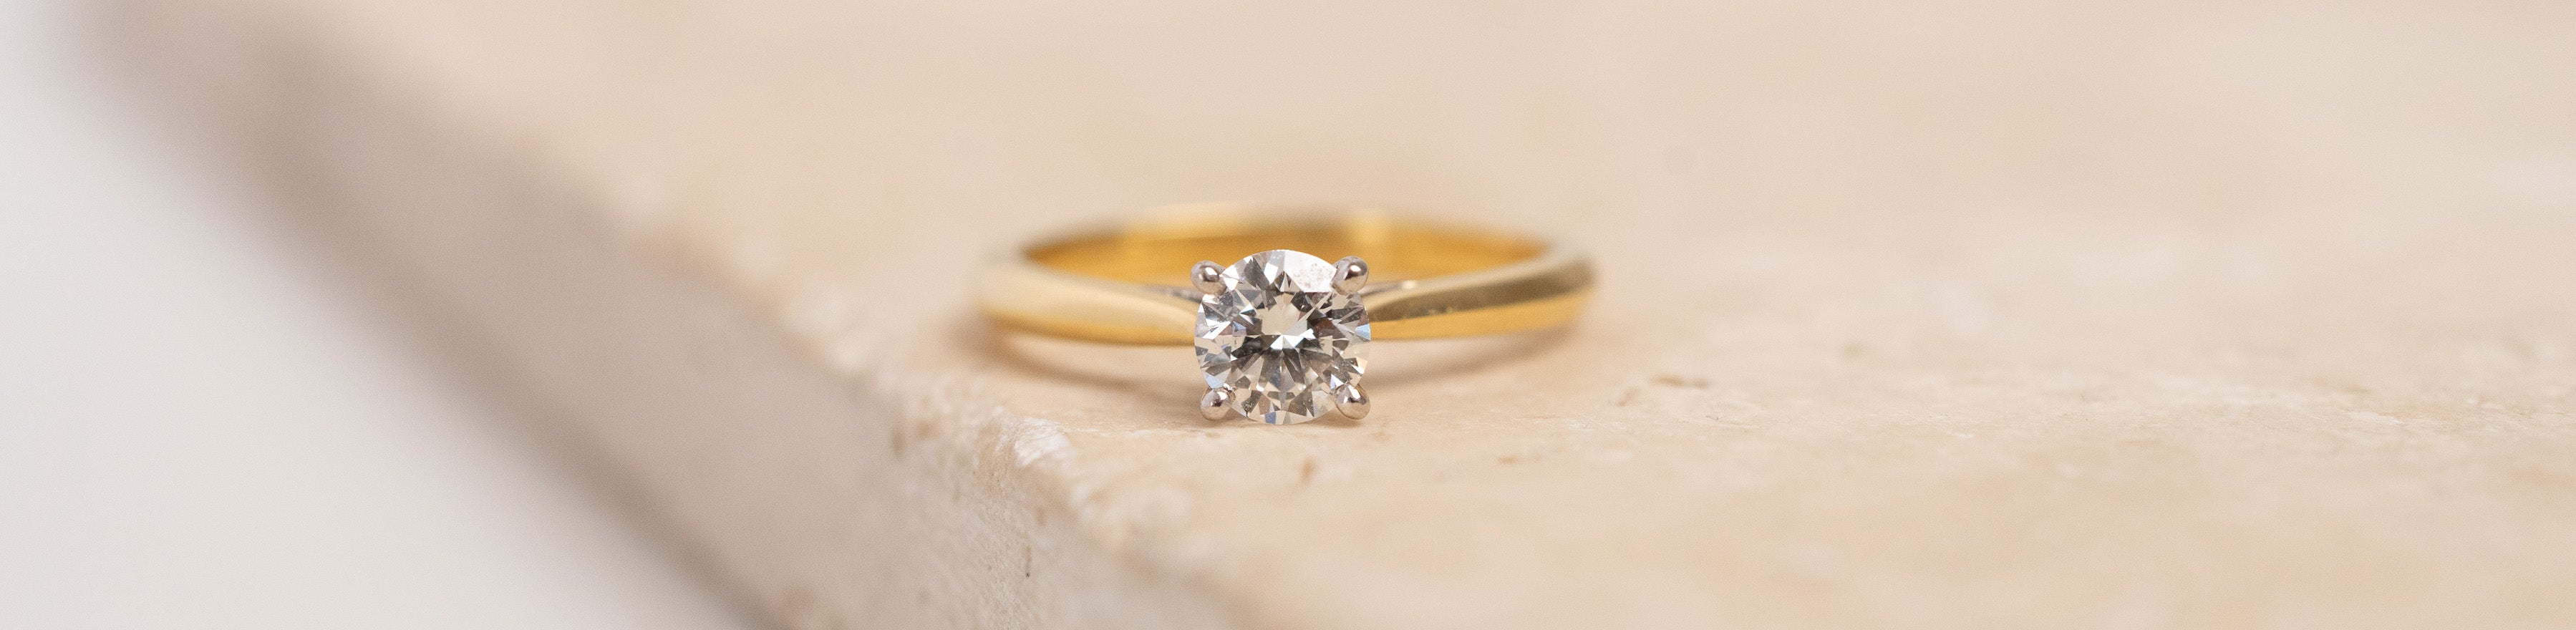 Engagement Ring: Round Brilliant